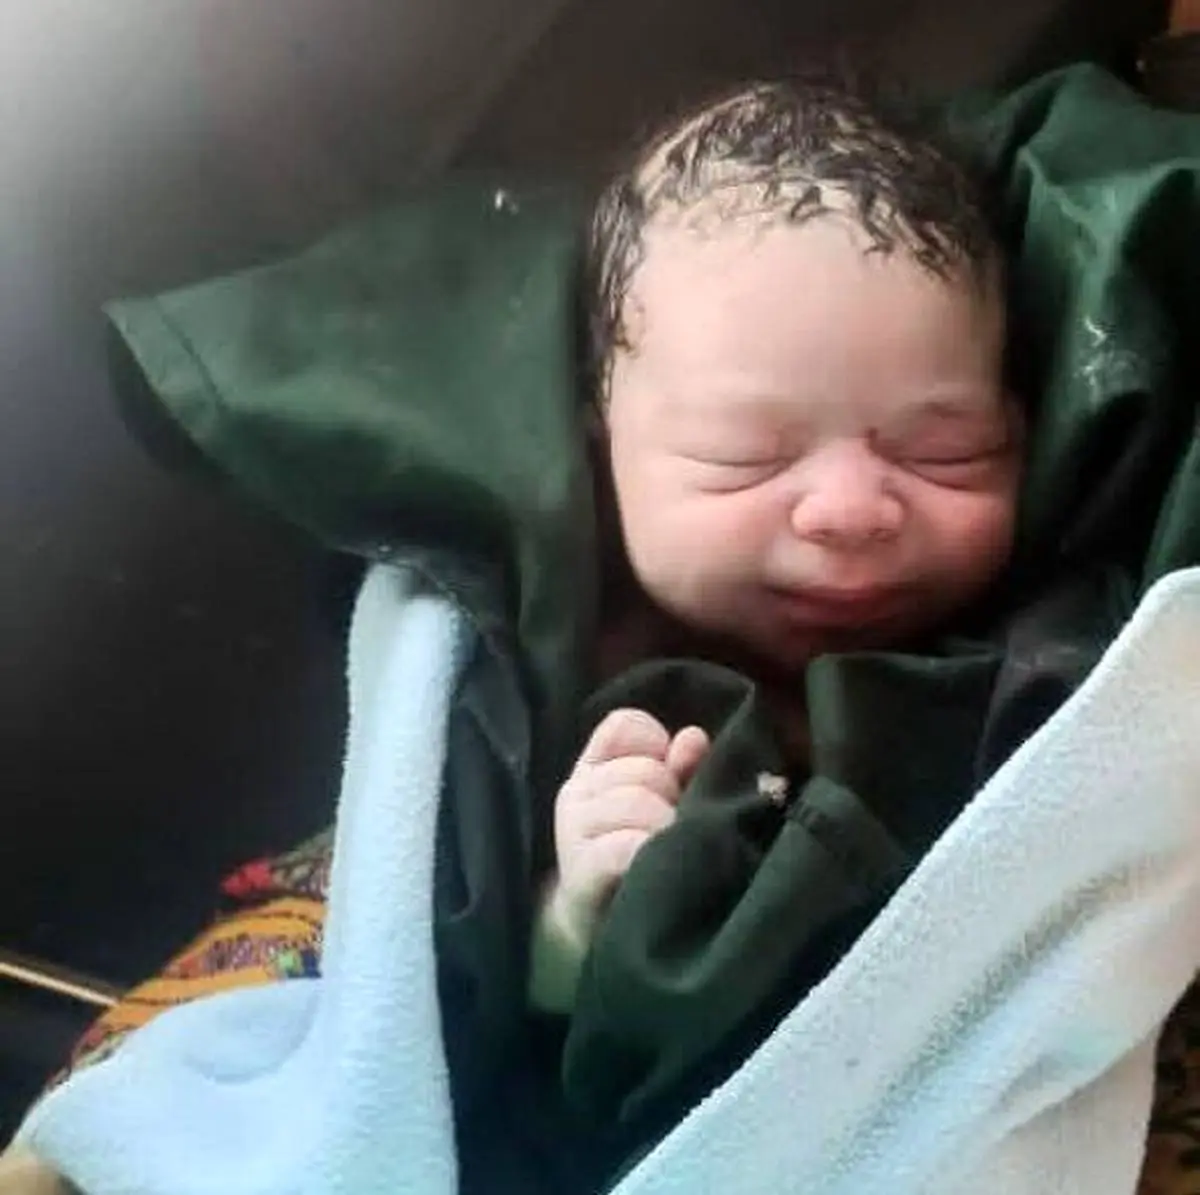 خبر تلخ و دردناک در نیشابور | پیدا شدن یک نوزاد رها شده کنار سطل زباله